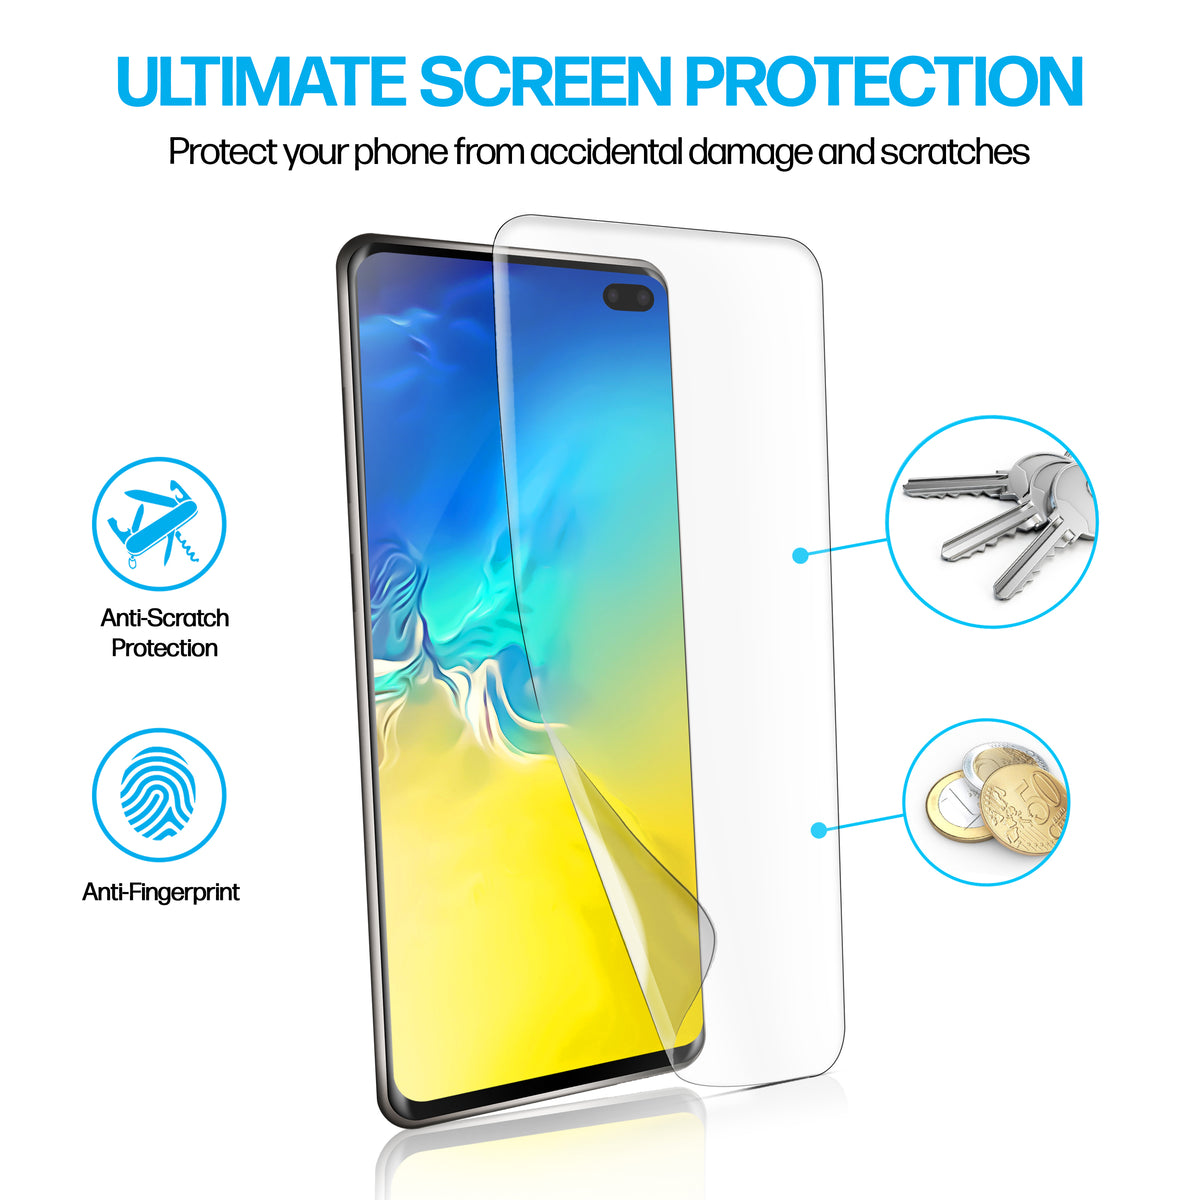 Samsung Galaxy S10 Plus TPU Anti-Scratch Screen Protector Film [2-Pack] Cover